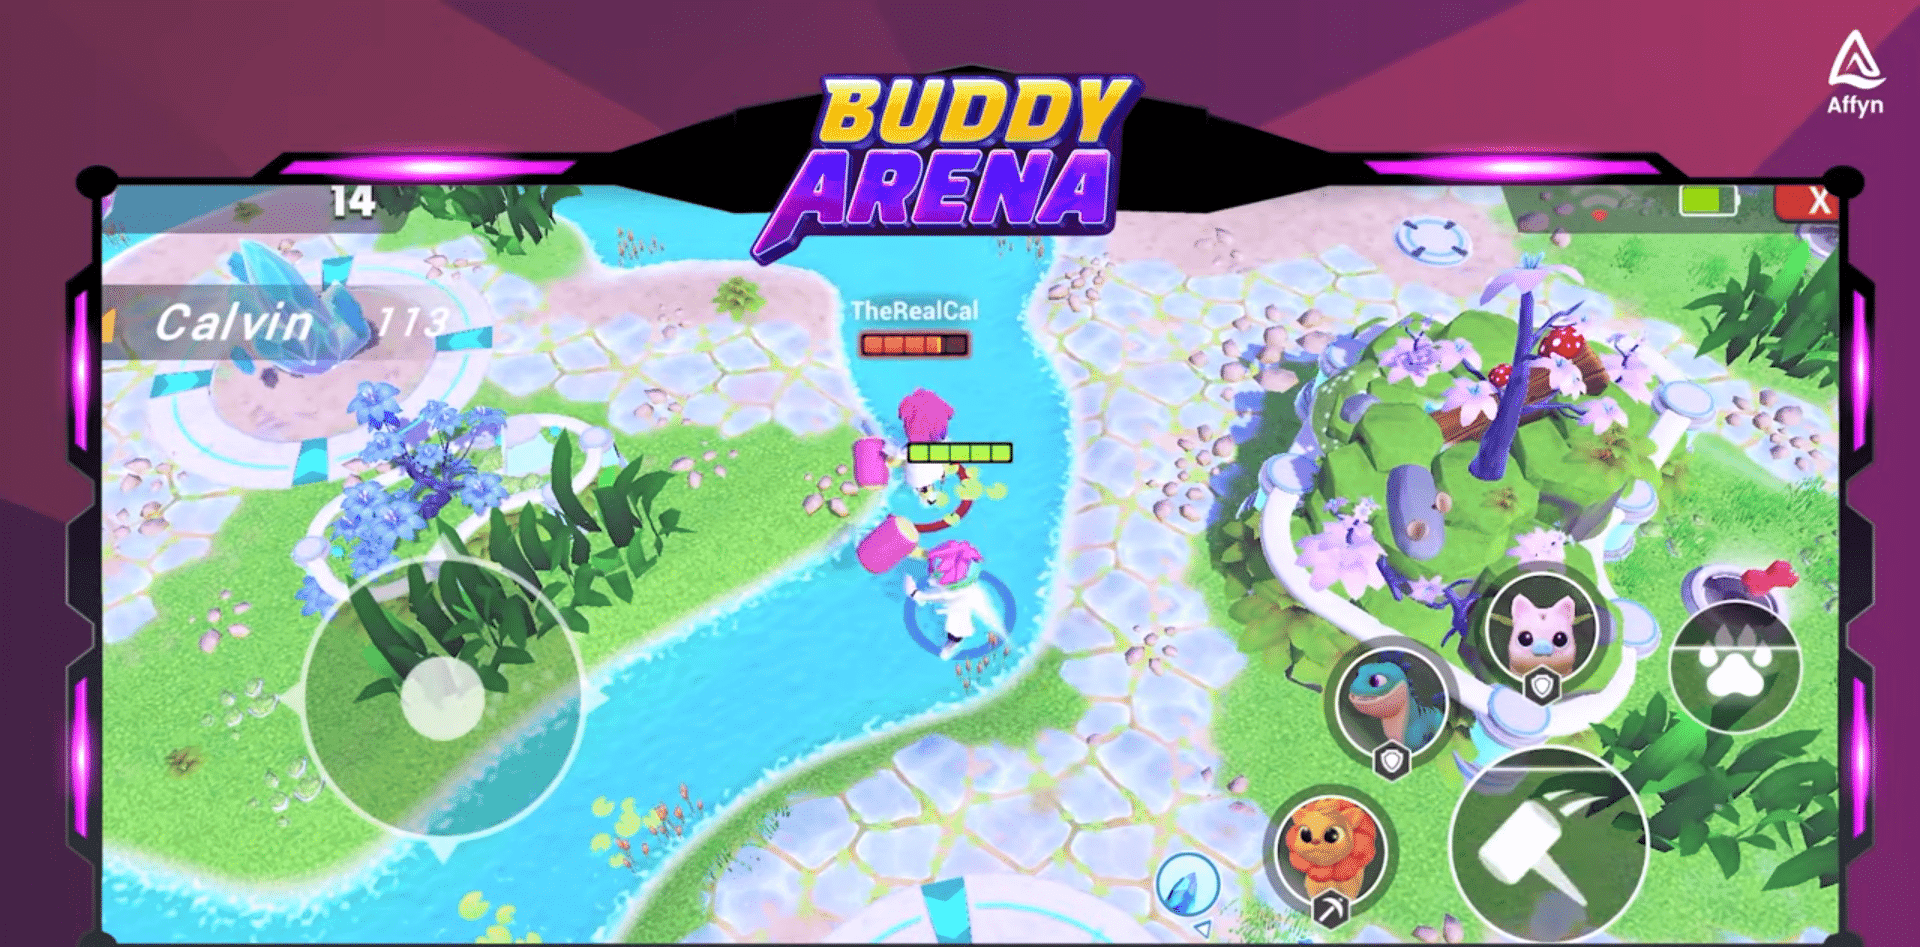 Affyn, créateur de jeux Web3 basé à Singapour, présente Buddy Arena, un jeu mobile Web3 Nexus World&#39;s Buddy NFT, une expérience de combat en ligne.